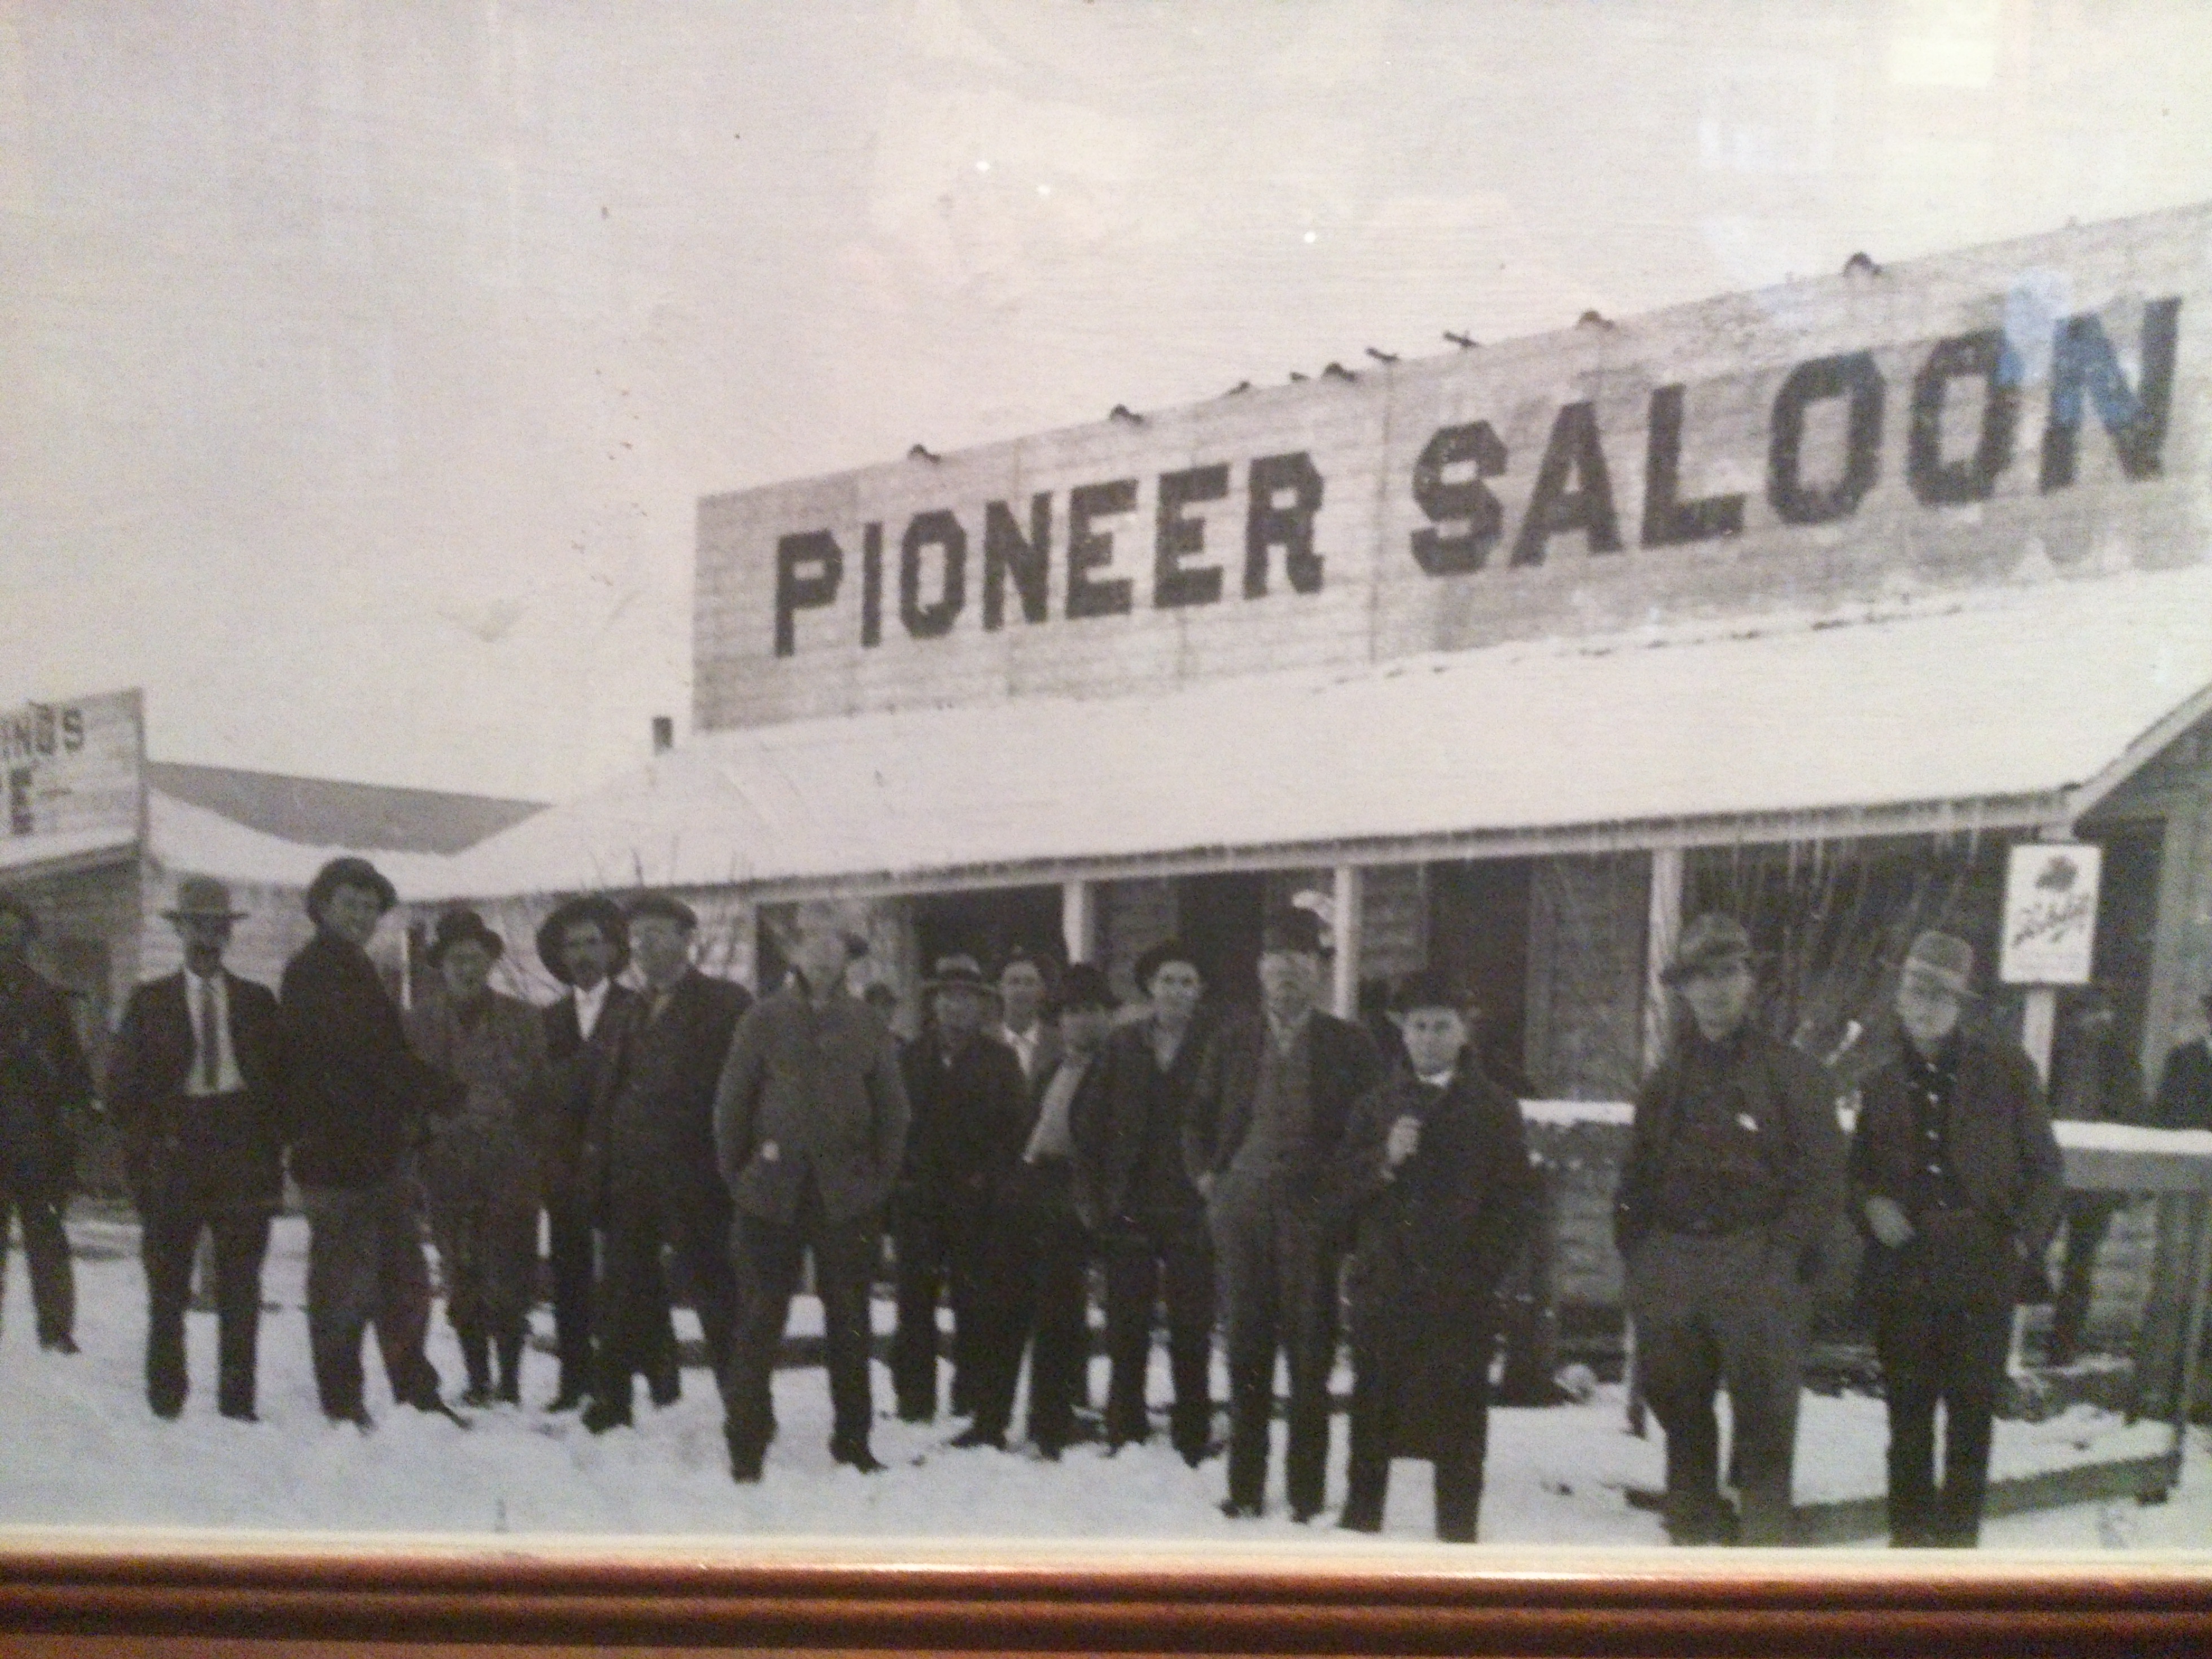 Pioneer saloon